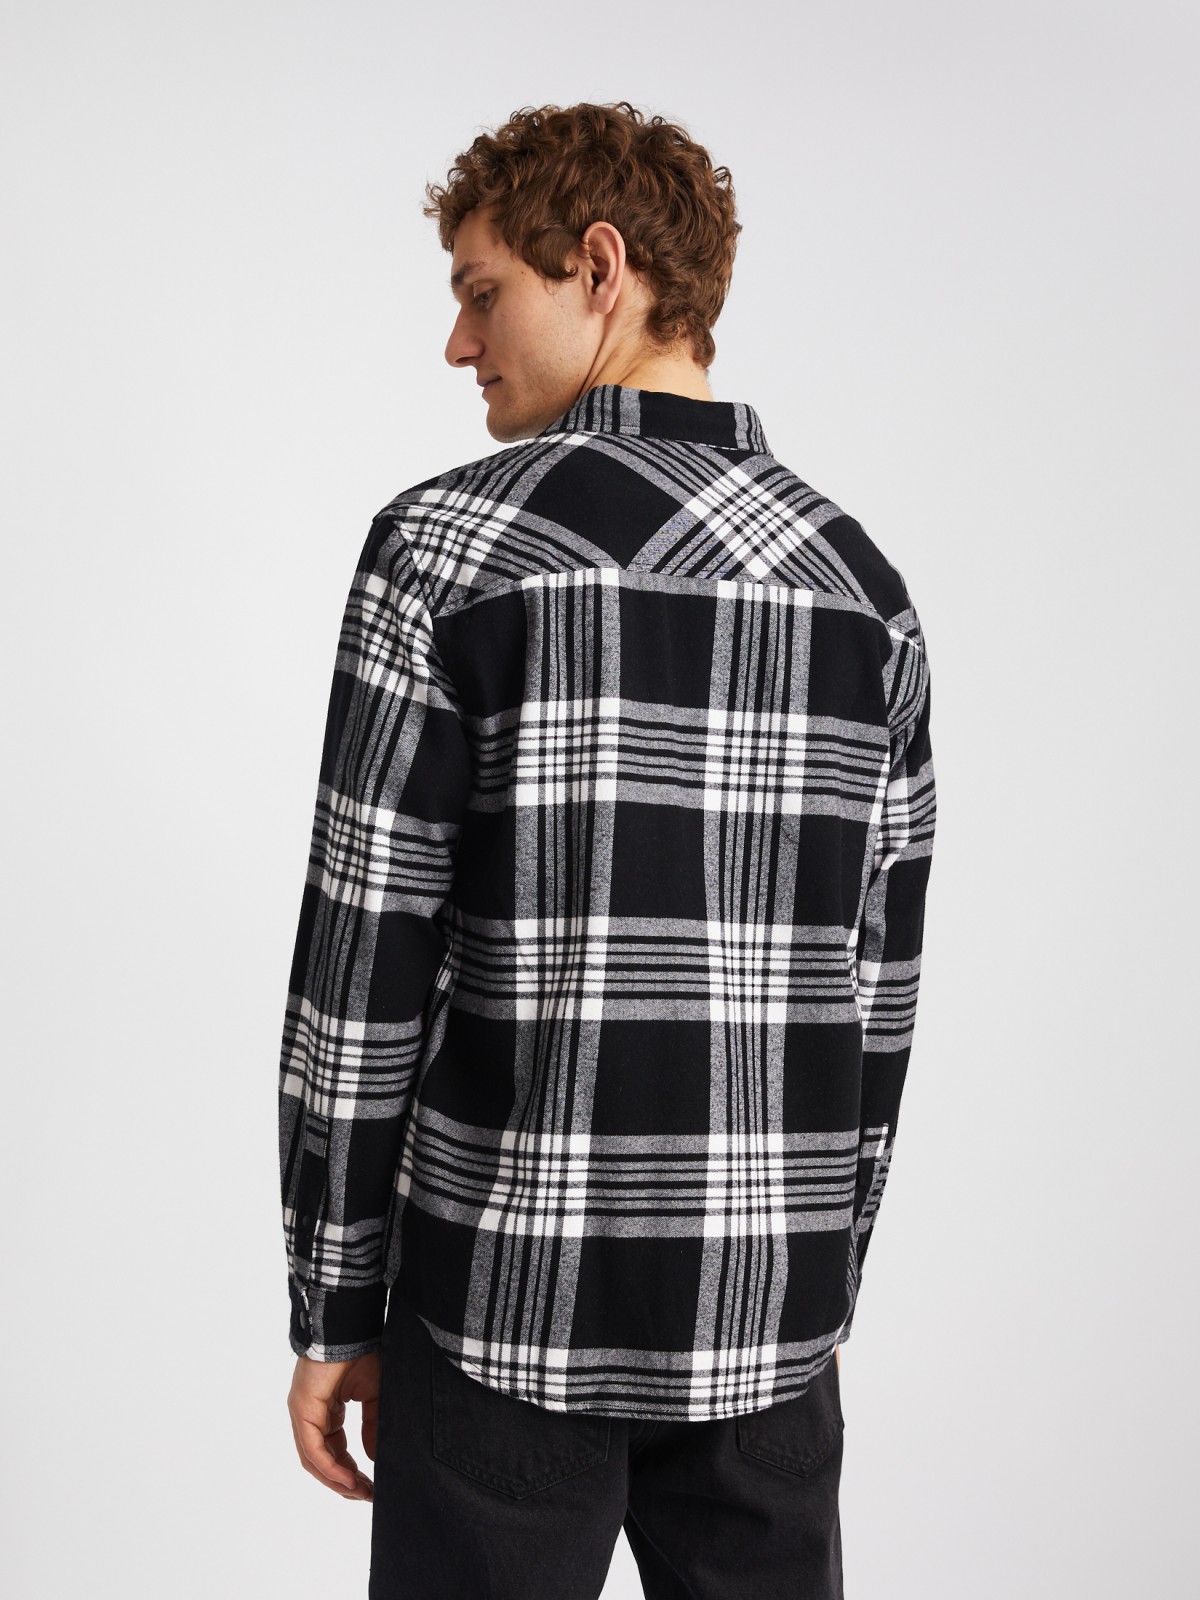 Куртка-рубашка из хлопка с длинным рукавом и узором в клетку zolla 014122191113, цвет черный, размер S - фото 6